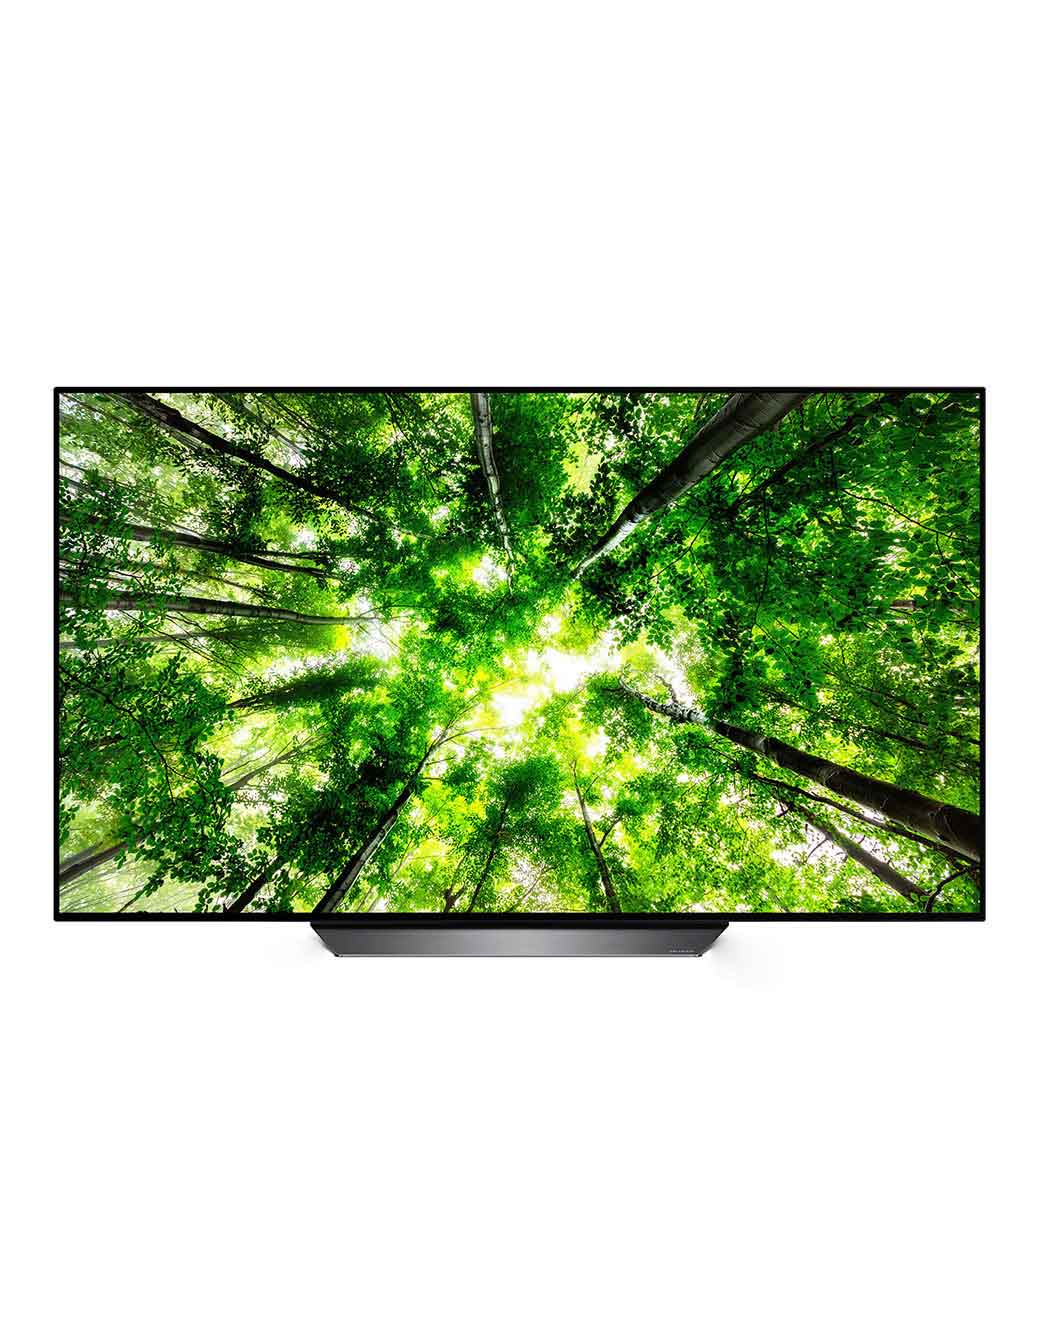 Comment entretenir mon TV OLED LG 55B8 4K ? – LG Televiseur OLED